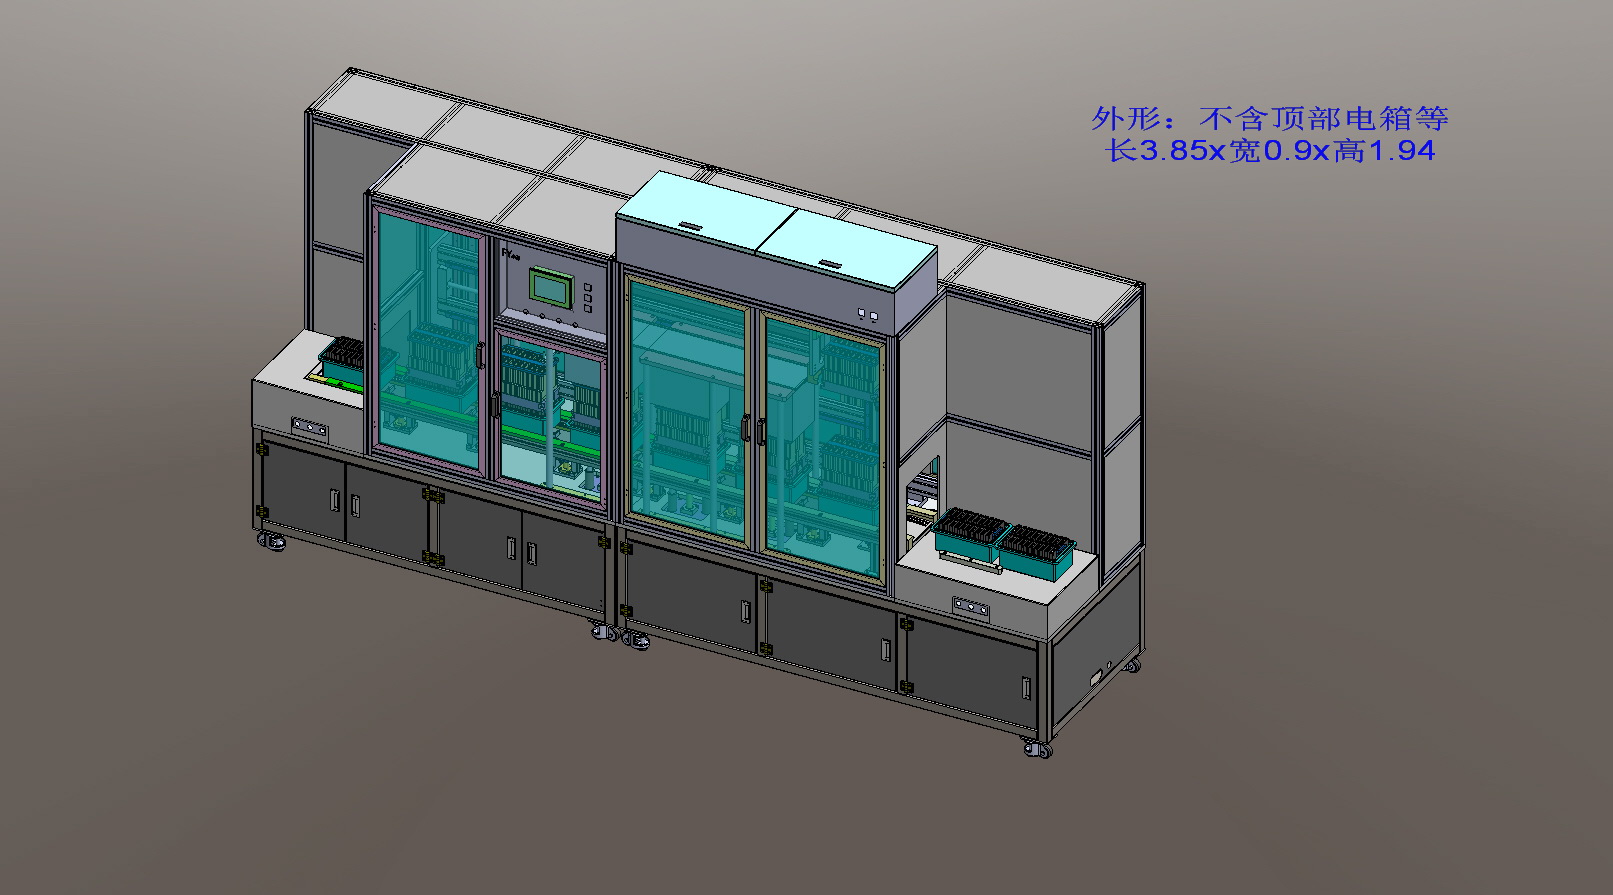 锂电池自动组装机3D图 带工程图